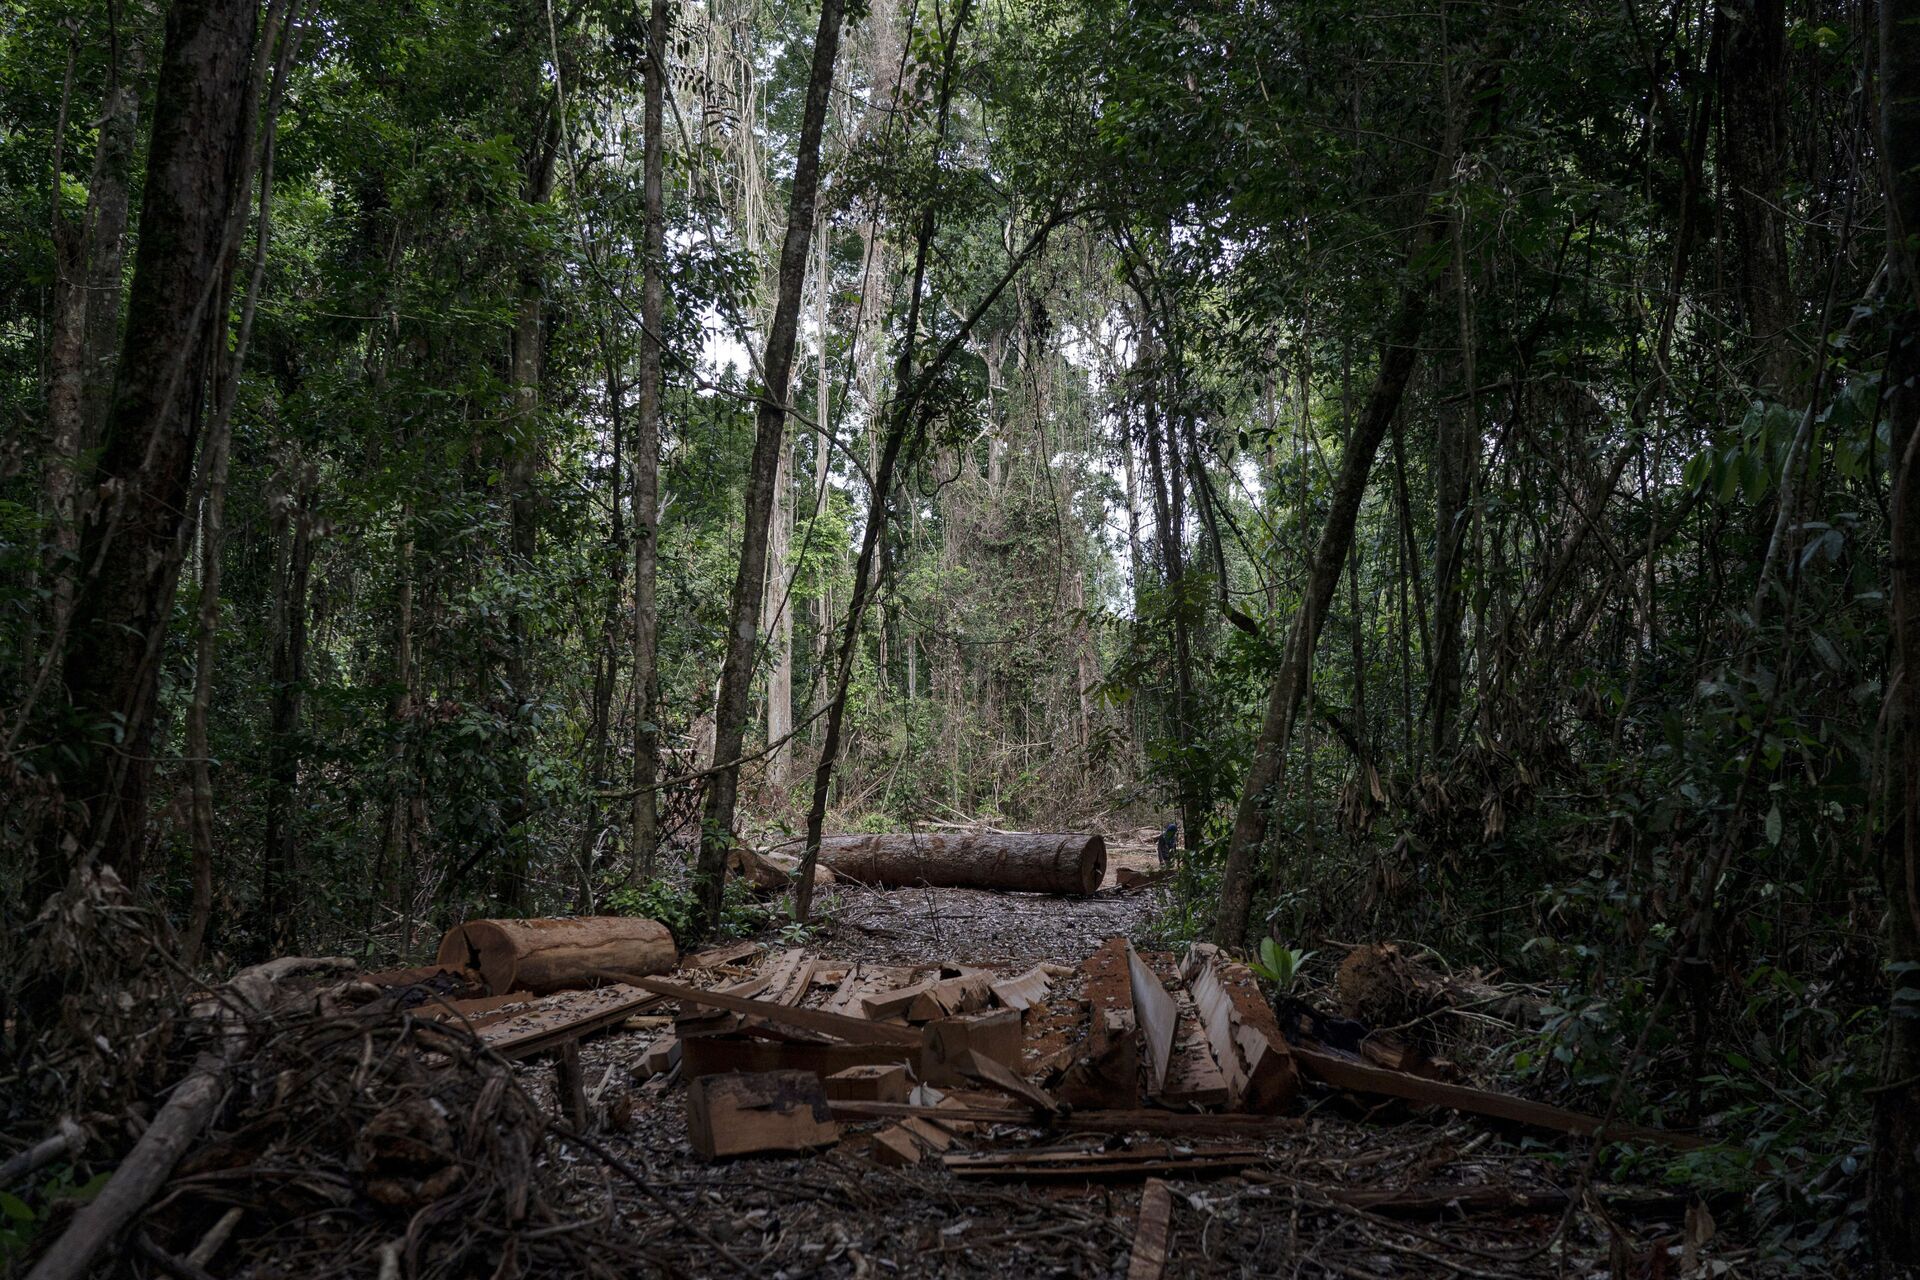 Amazônia pode virar savana em até 30 anos com o ritmo atual de desmatamento, alerta especialista - Sputnik Brasil, 1920, 28.05.2021